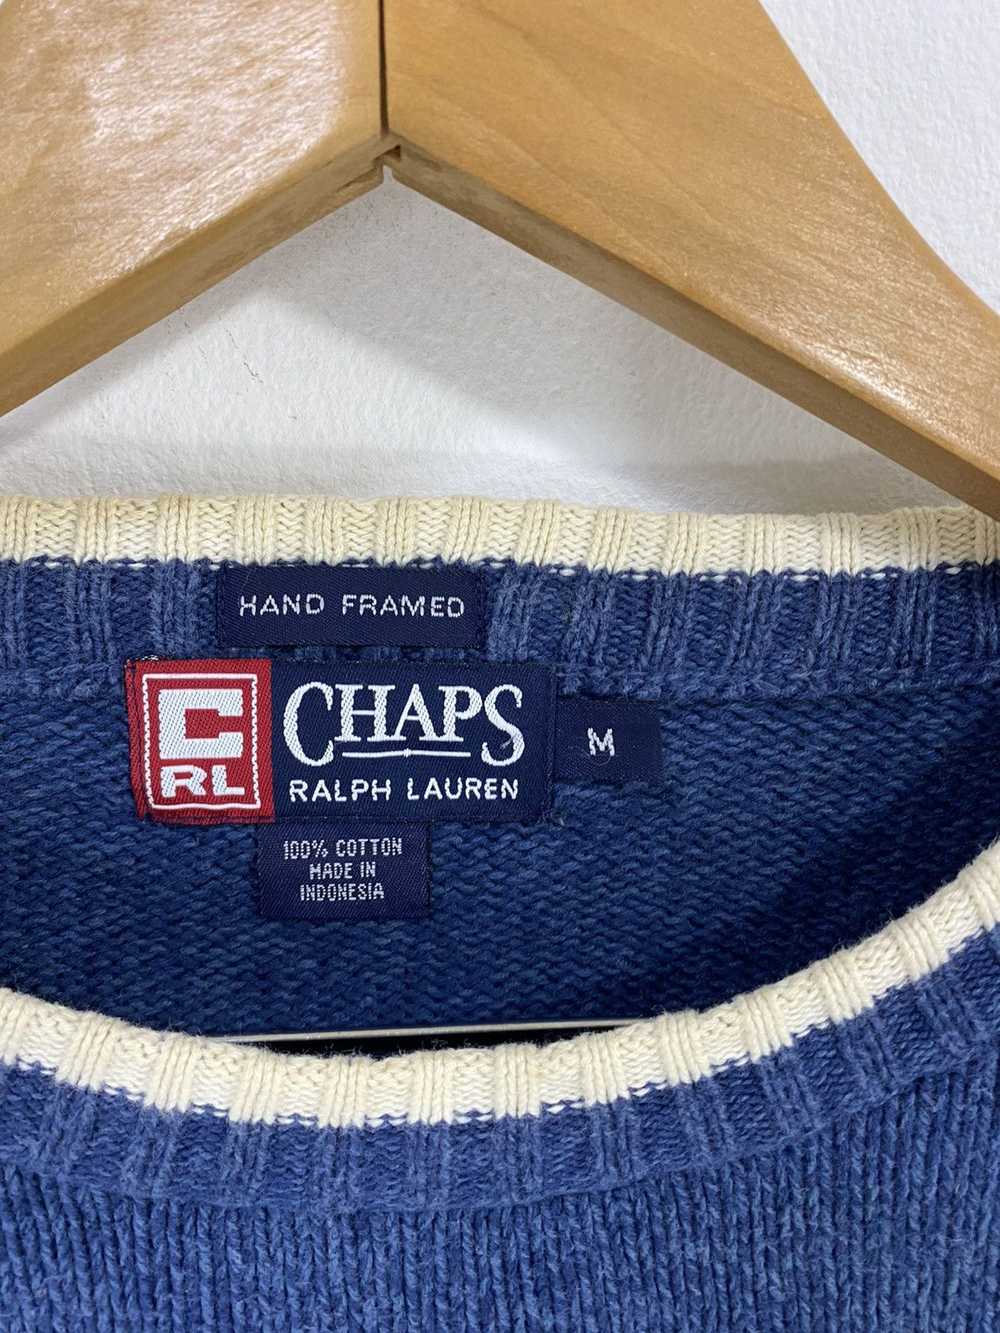 Polo Ralph Lauren Chaps Ralph Lauren Knitted Wear… - image 3